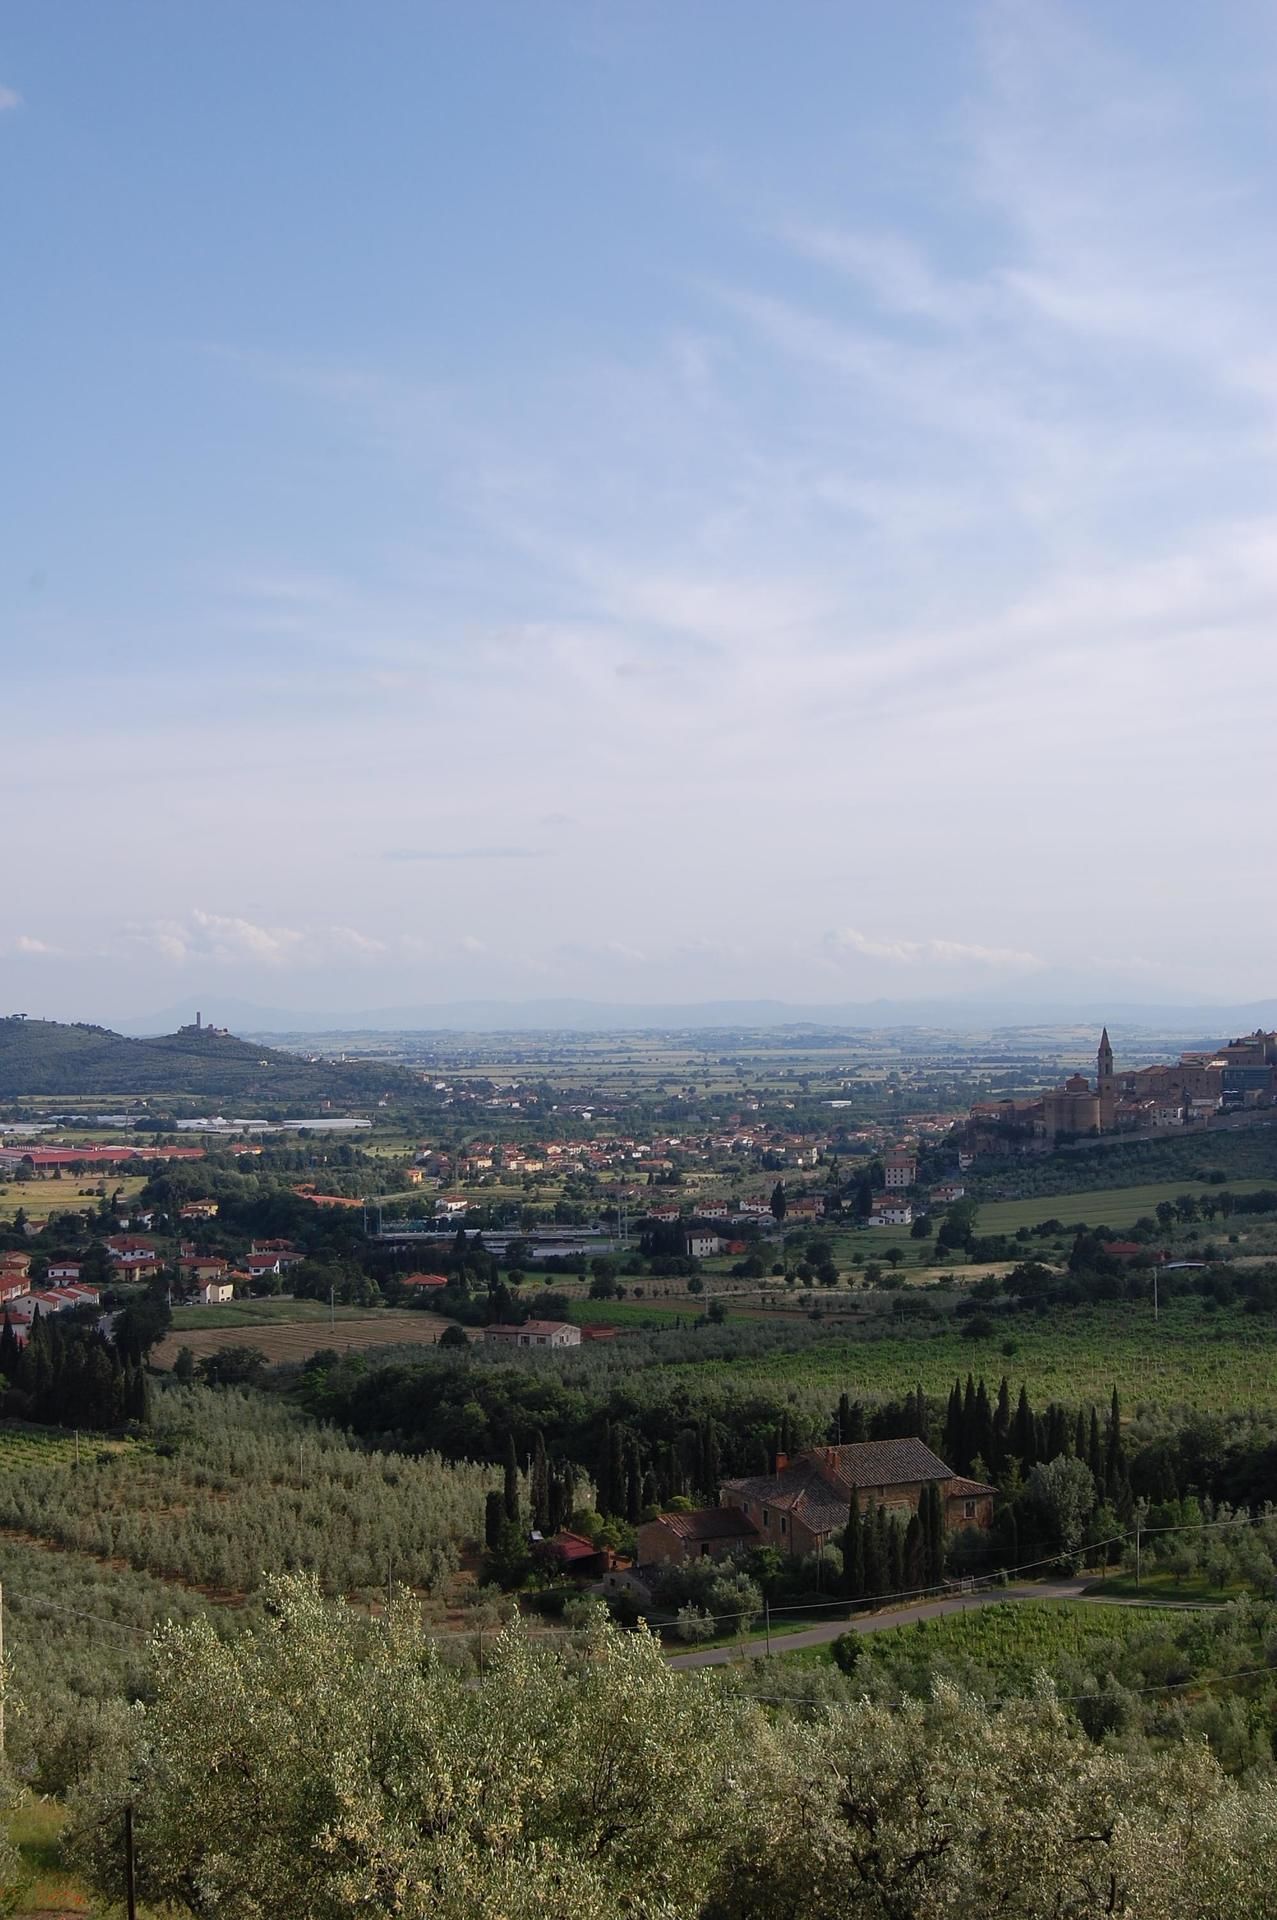 Villa Sant'Agnese, panorama of Castiglion Fiorentino